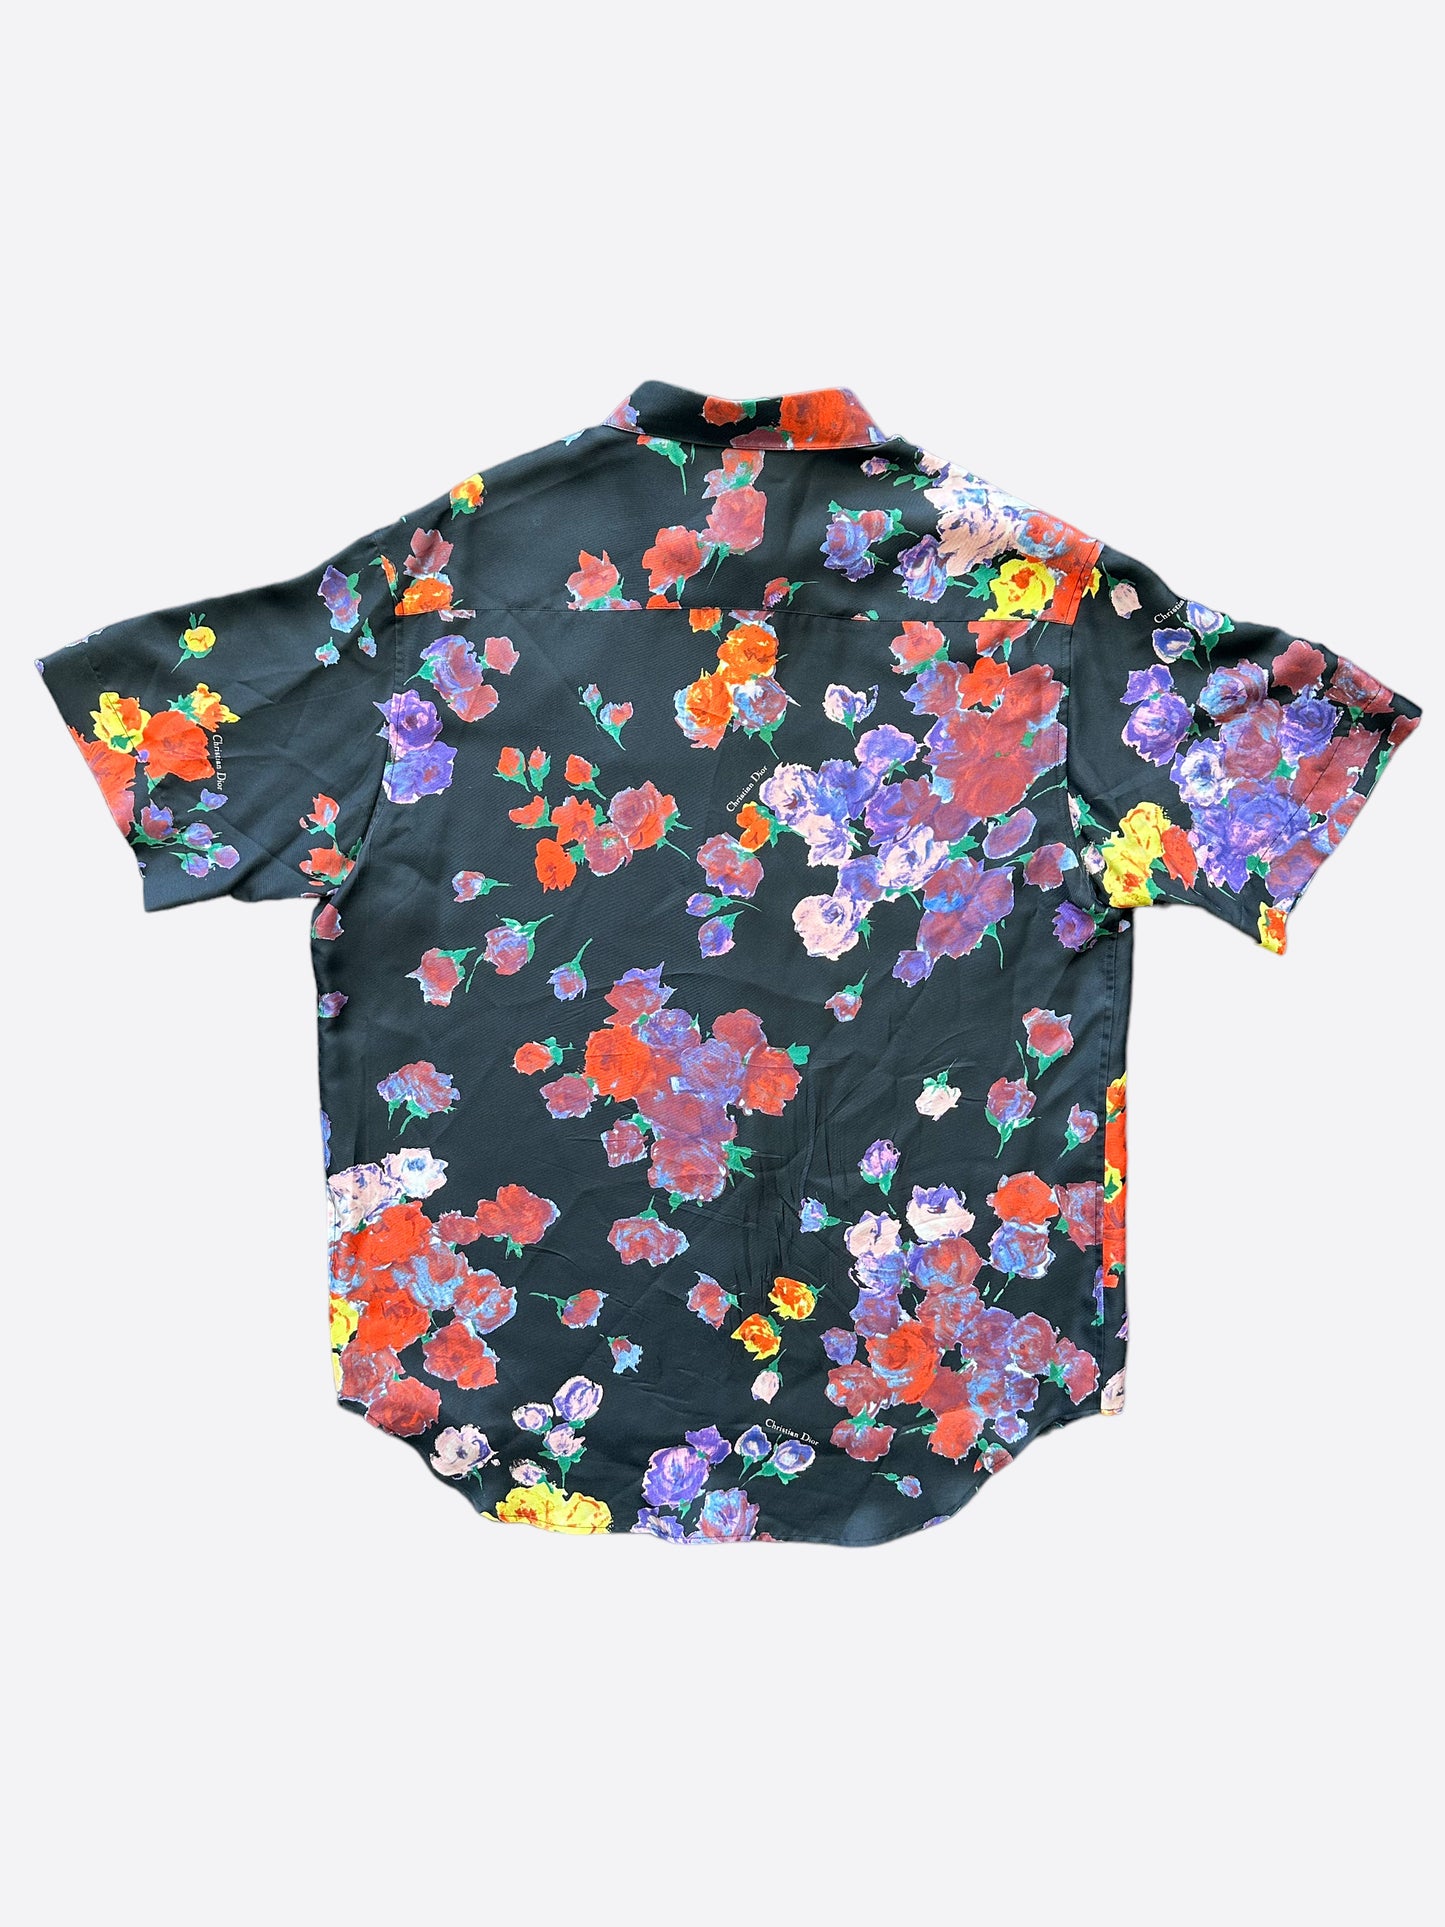 Dior Kaws Floral Print Silk Button Up Shirt